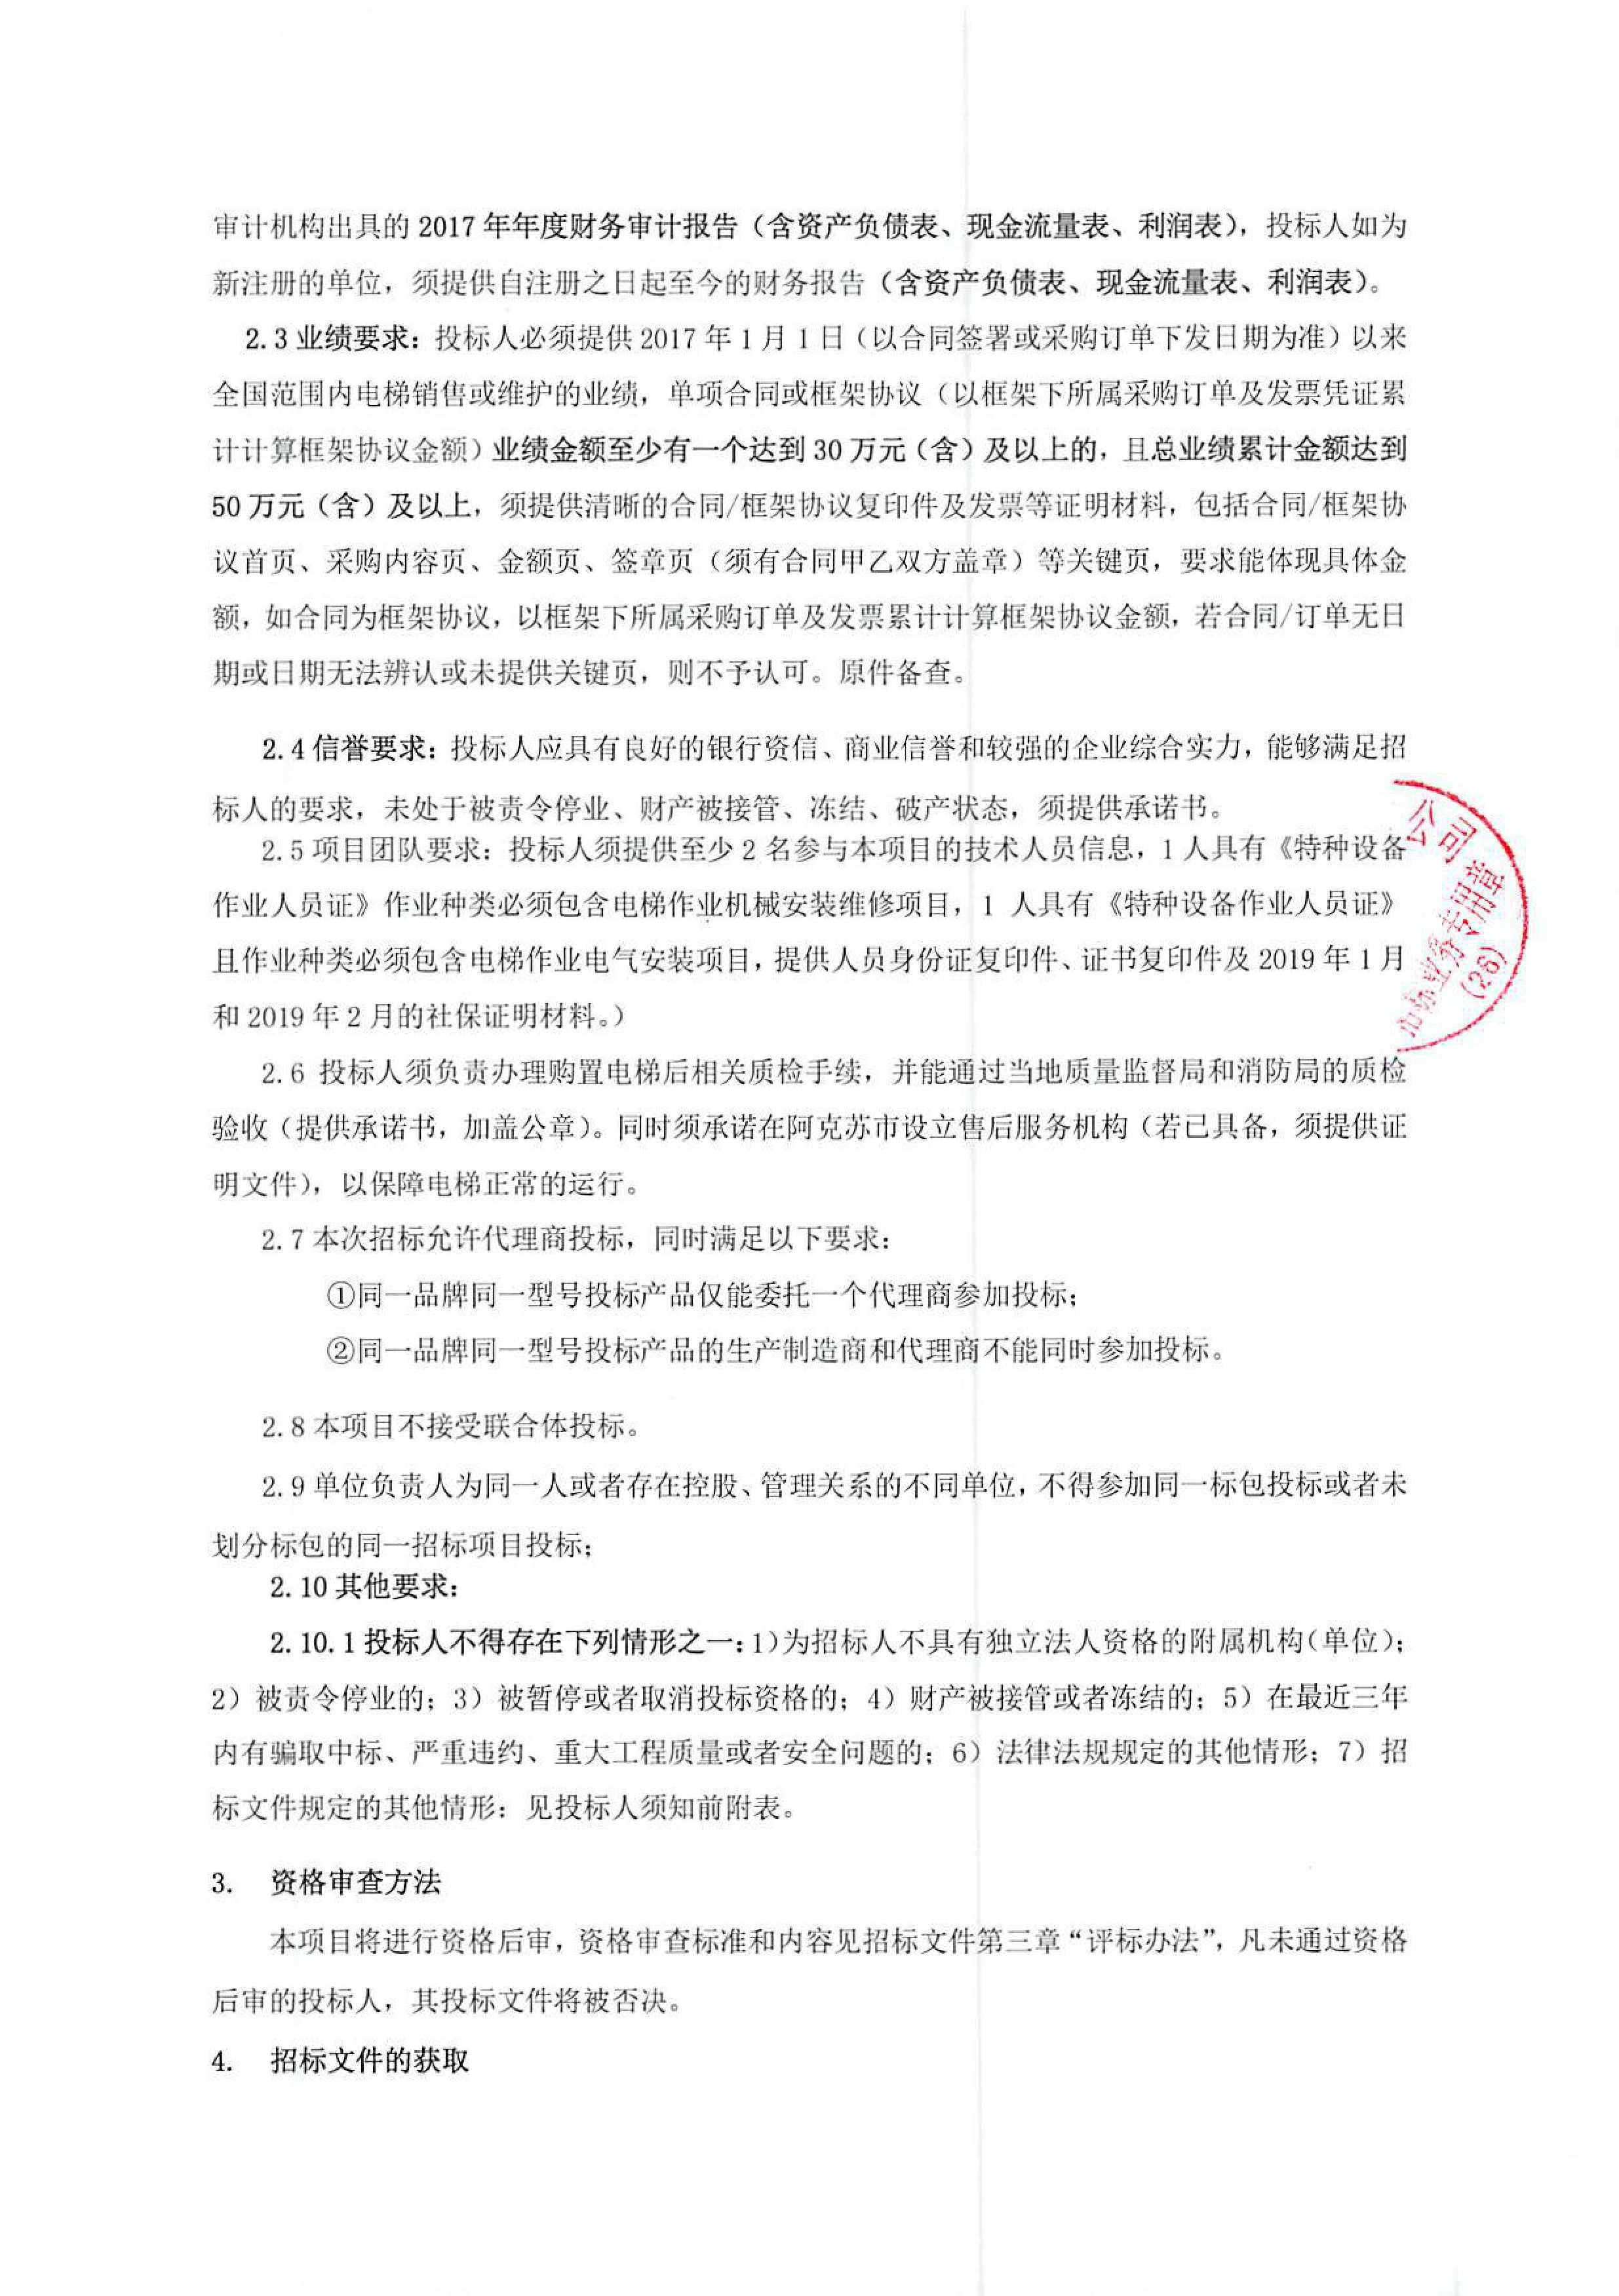 2019年中国联通阿克苏分公司办公楼电梯采购